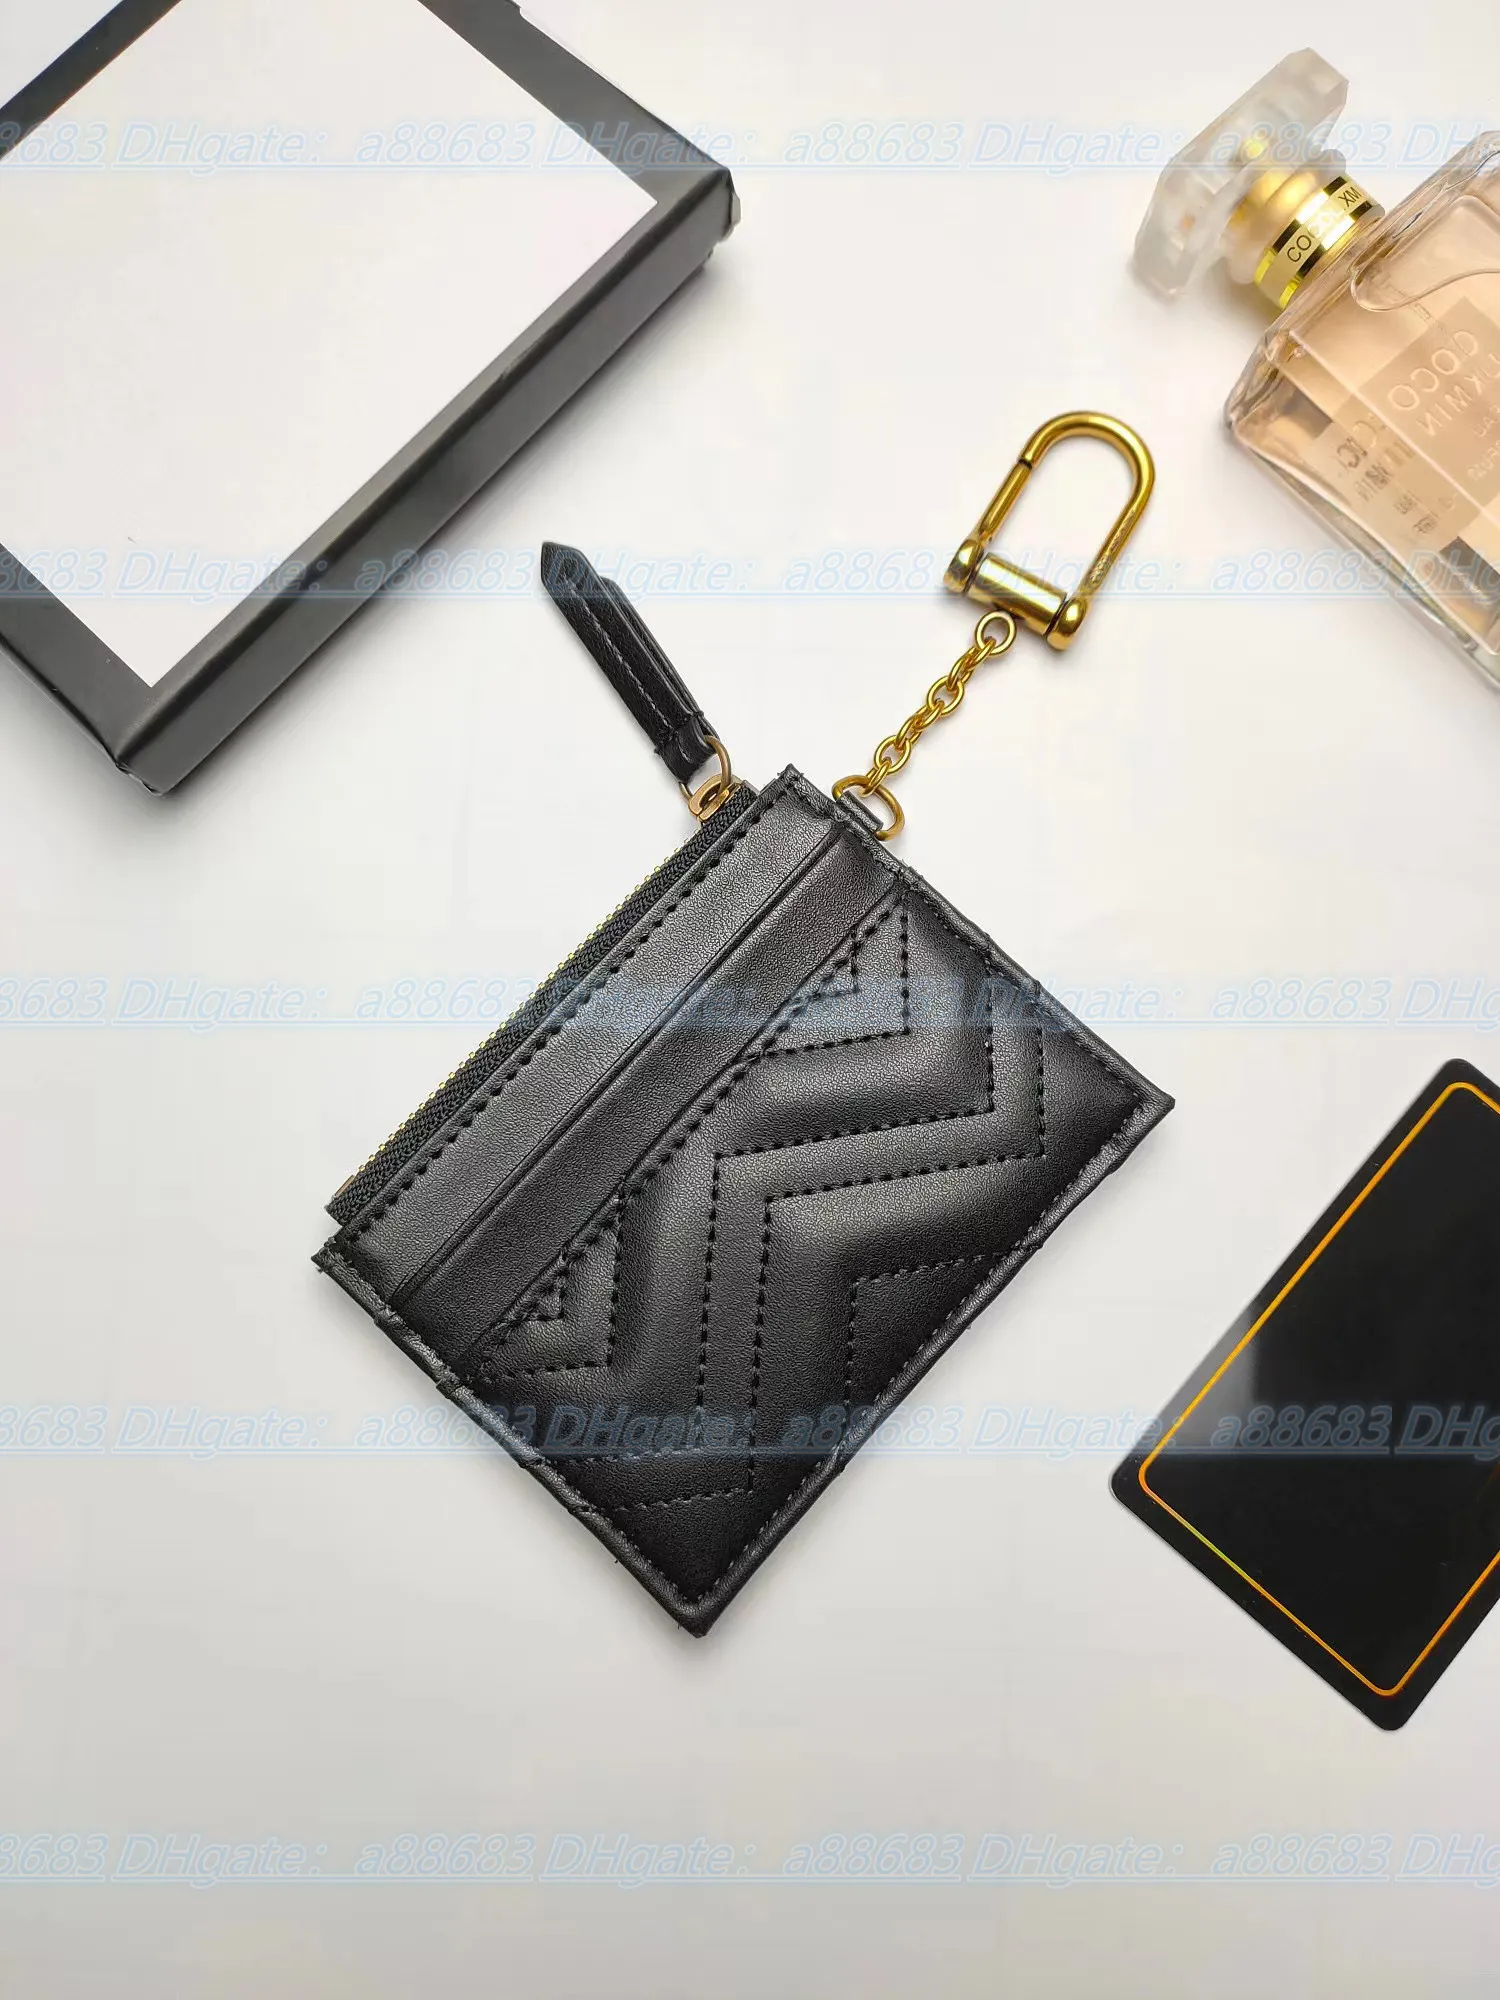 Luxurys Designersカードホルダー財布キー有名なポーチマーモントジッパーウォレットファッションカードハングバッグコイン本物の男性ウォレットレザー226Q